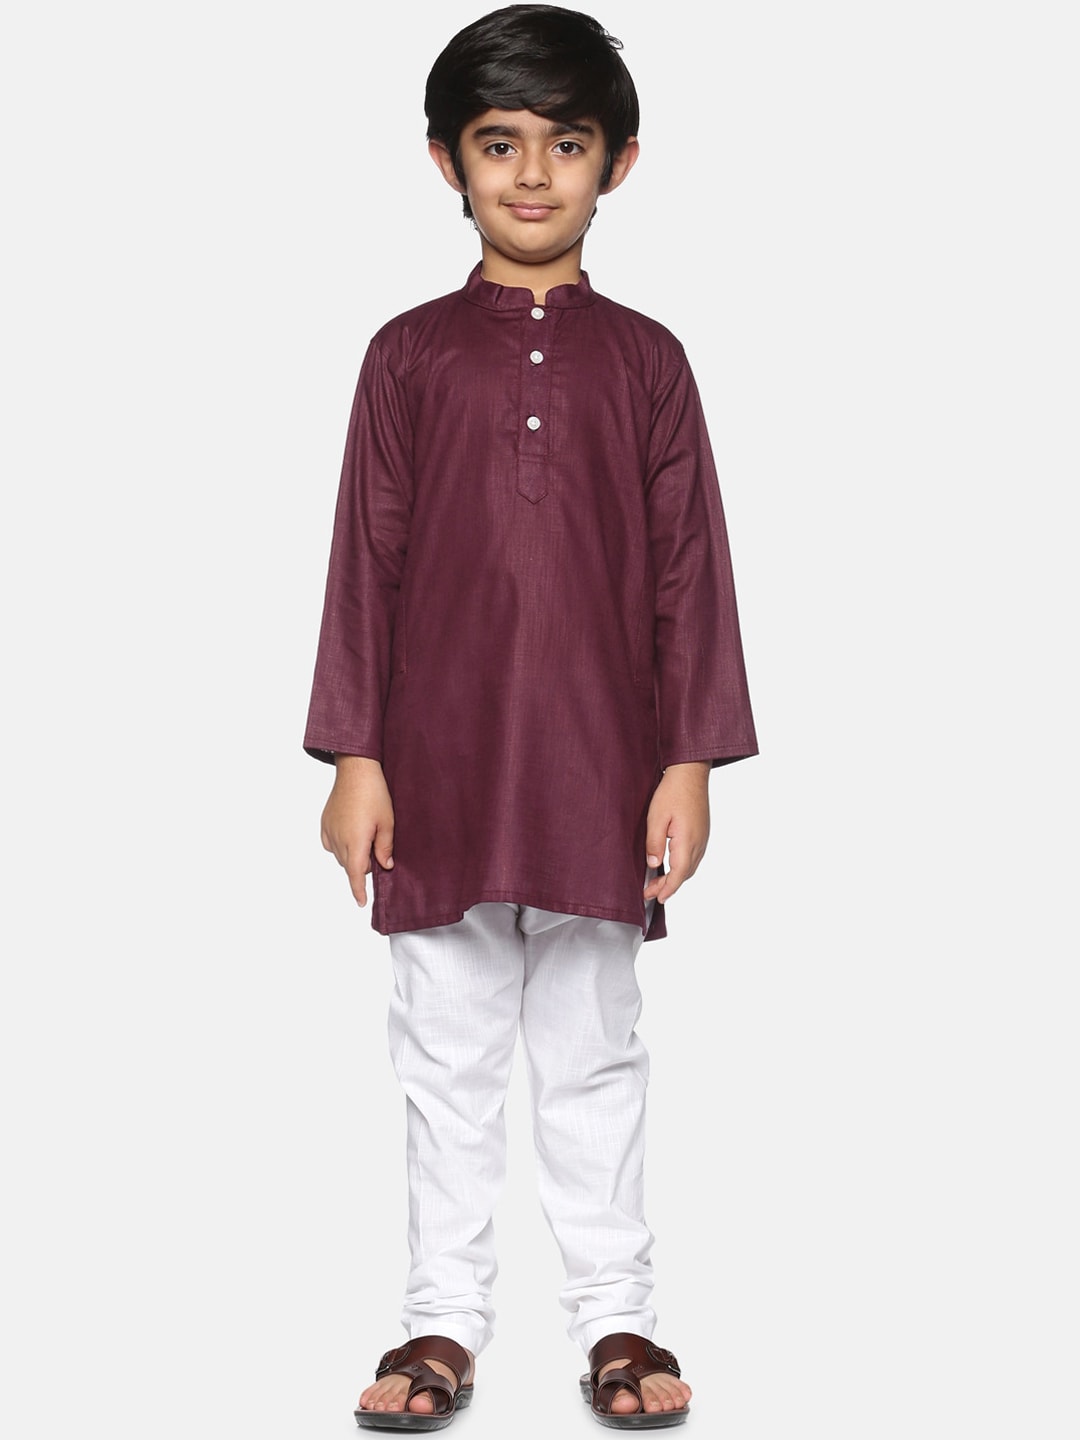 Sethukrishna Boys Maroon Pure Cotton Kurta with Pyjamas - Distacart